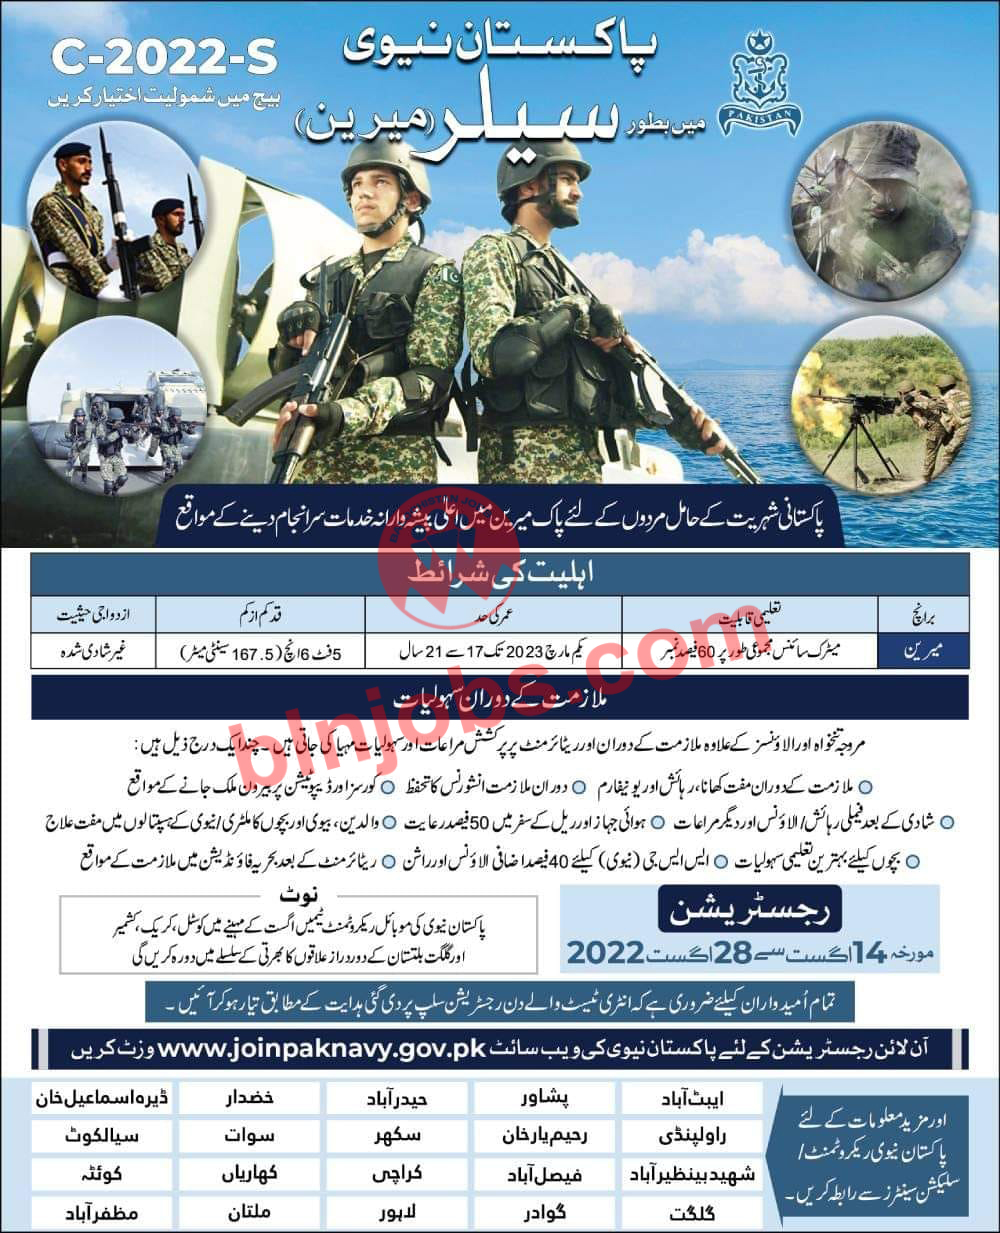 Join Pakistan Navy as Sailor 2022